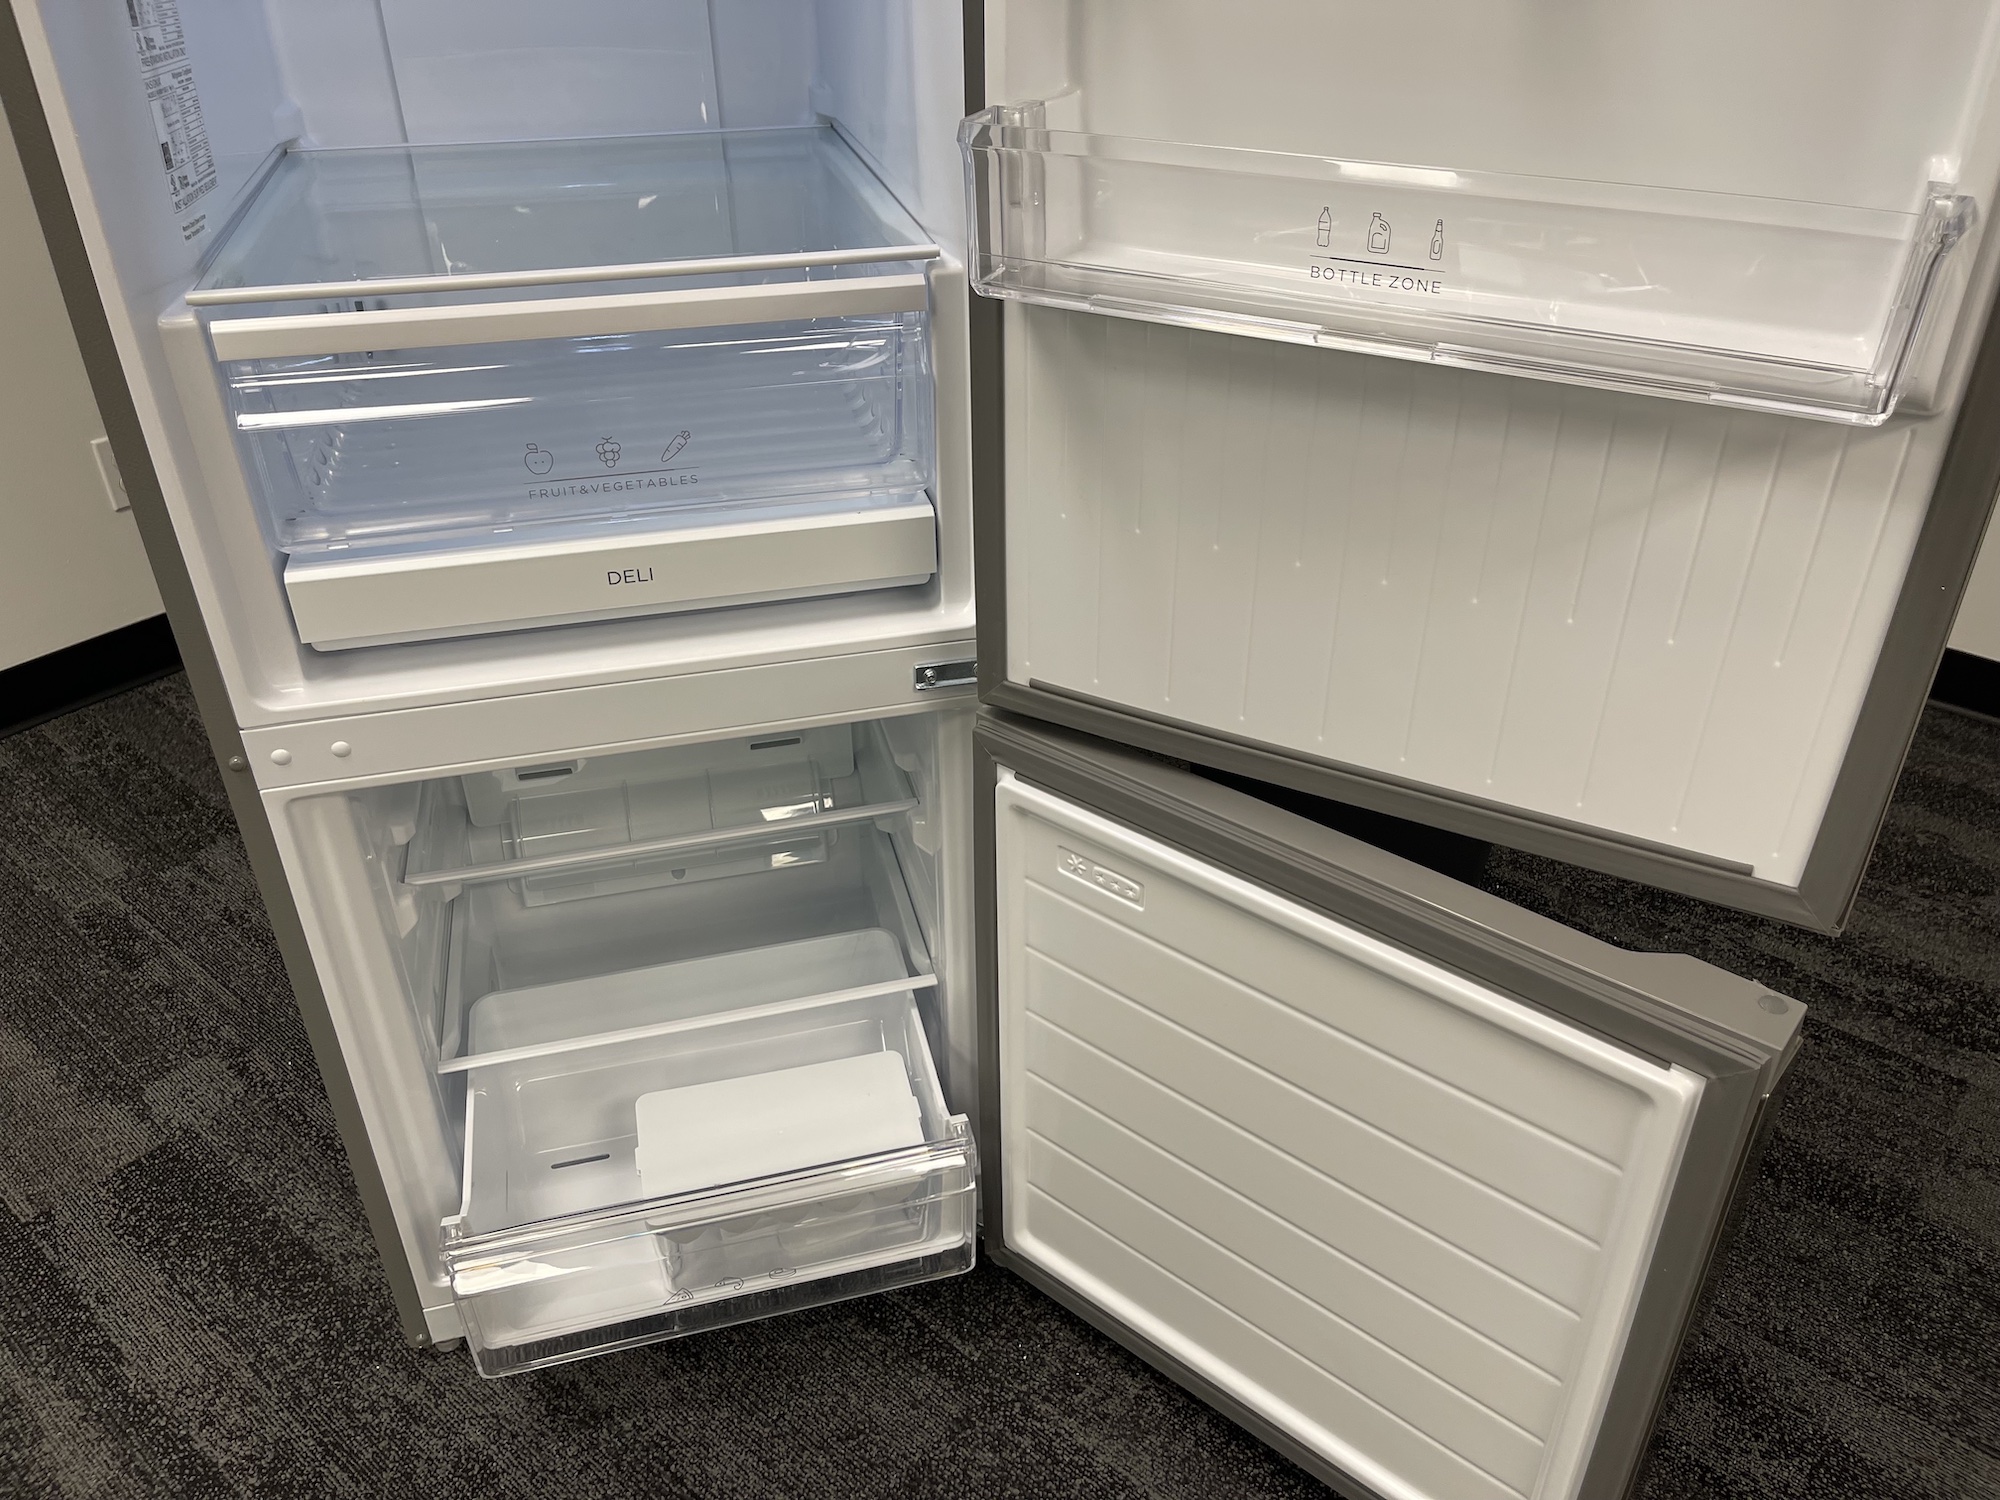 Insignia bottom freezer fridge open freezer